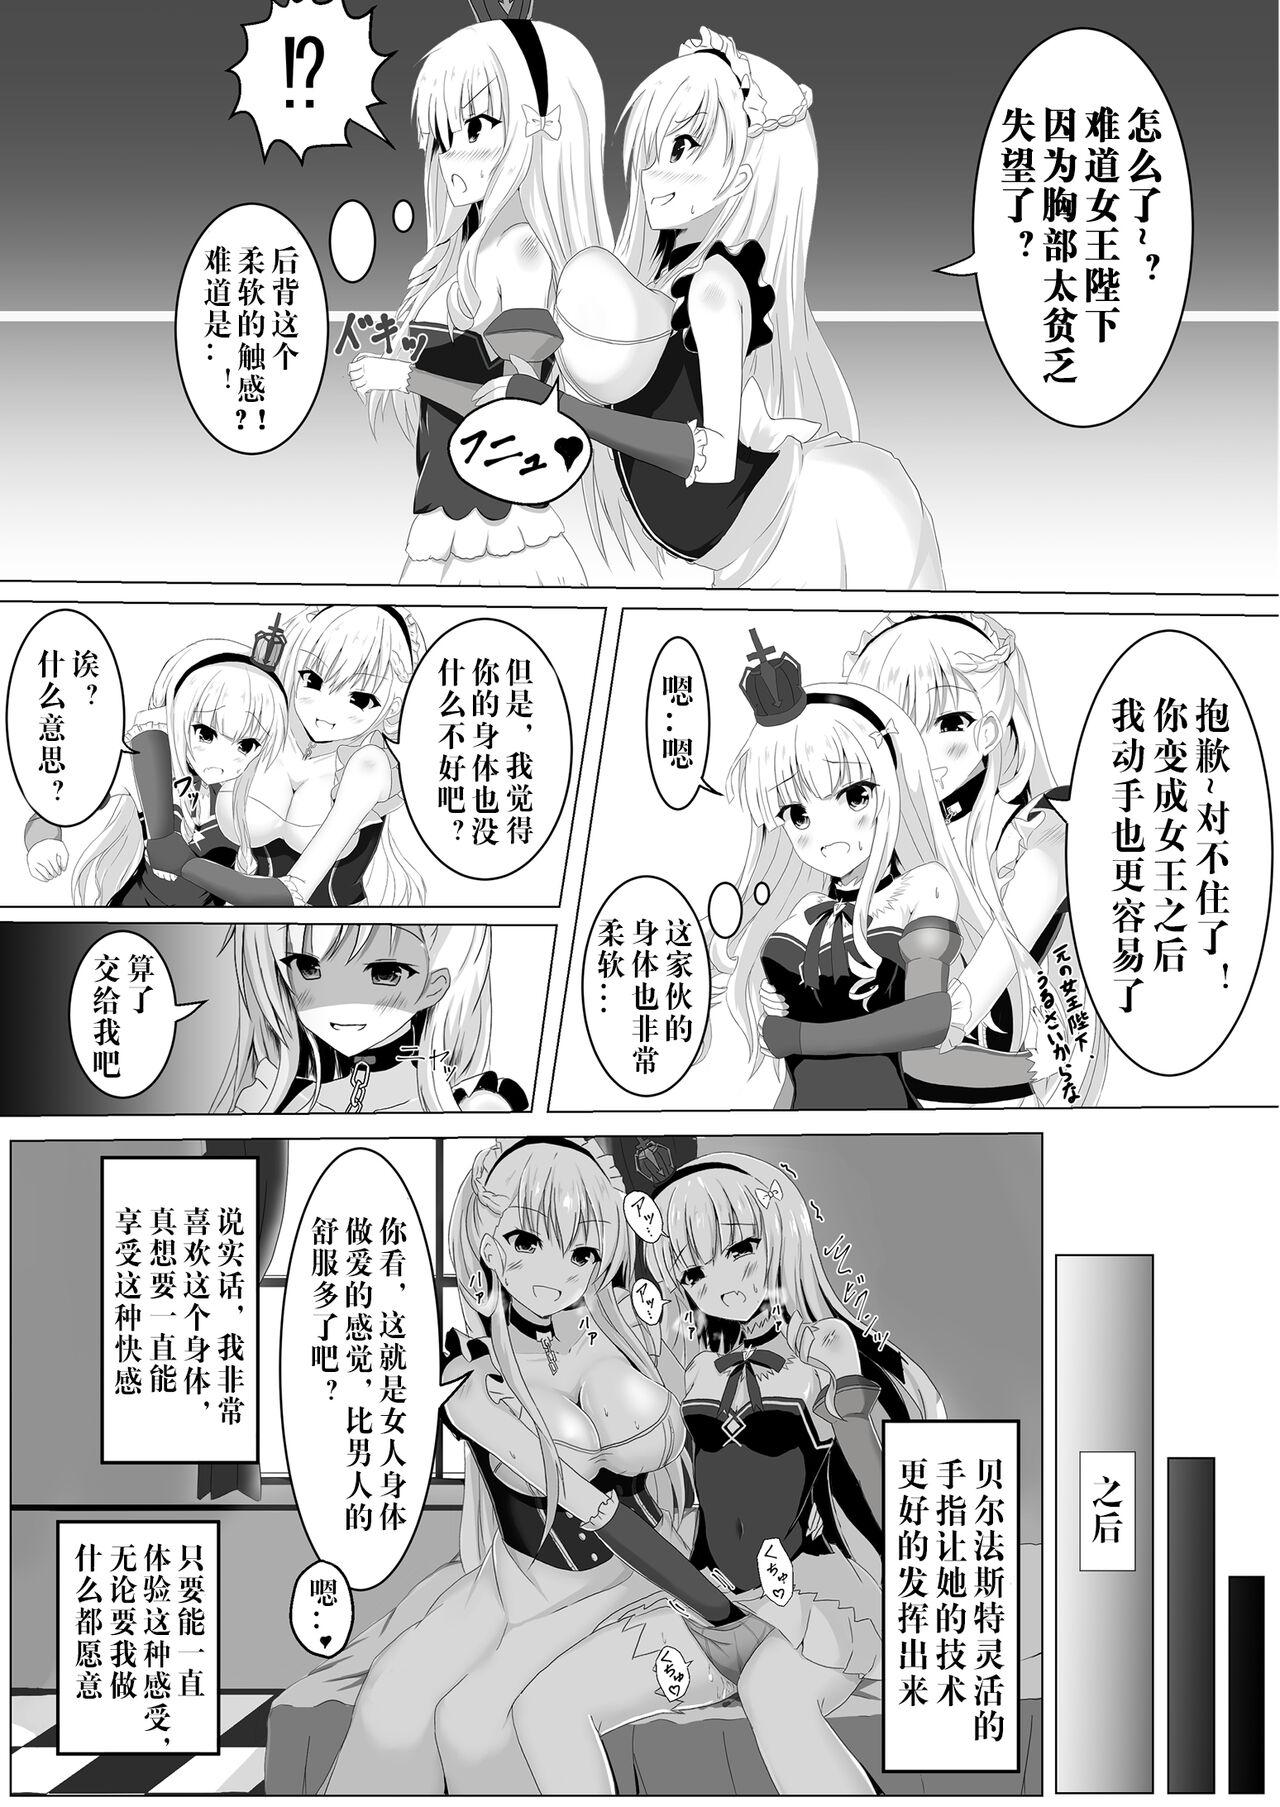 Dick Sucking Irekawari, Hyoui E Fukusuumai 3 - Azur lane Girl Girl - Page 10